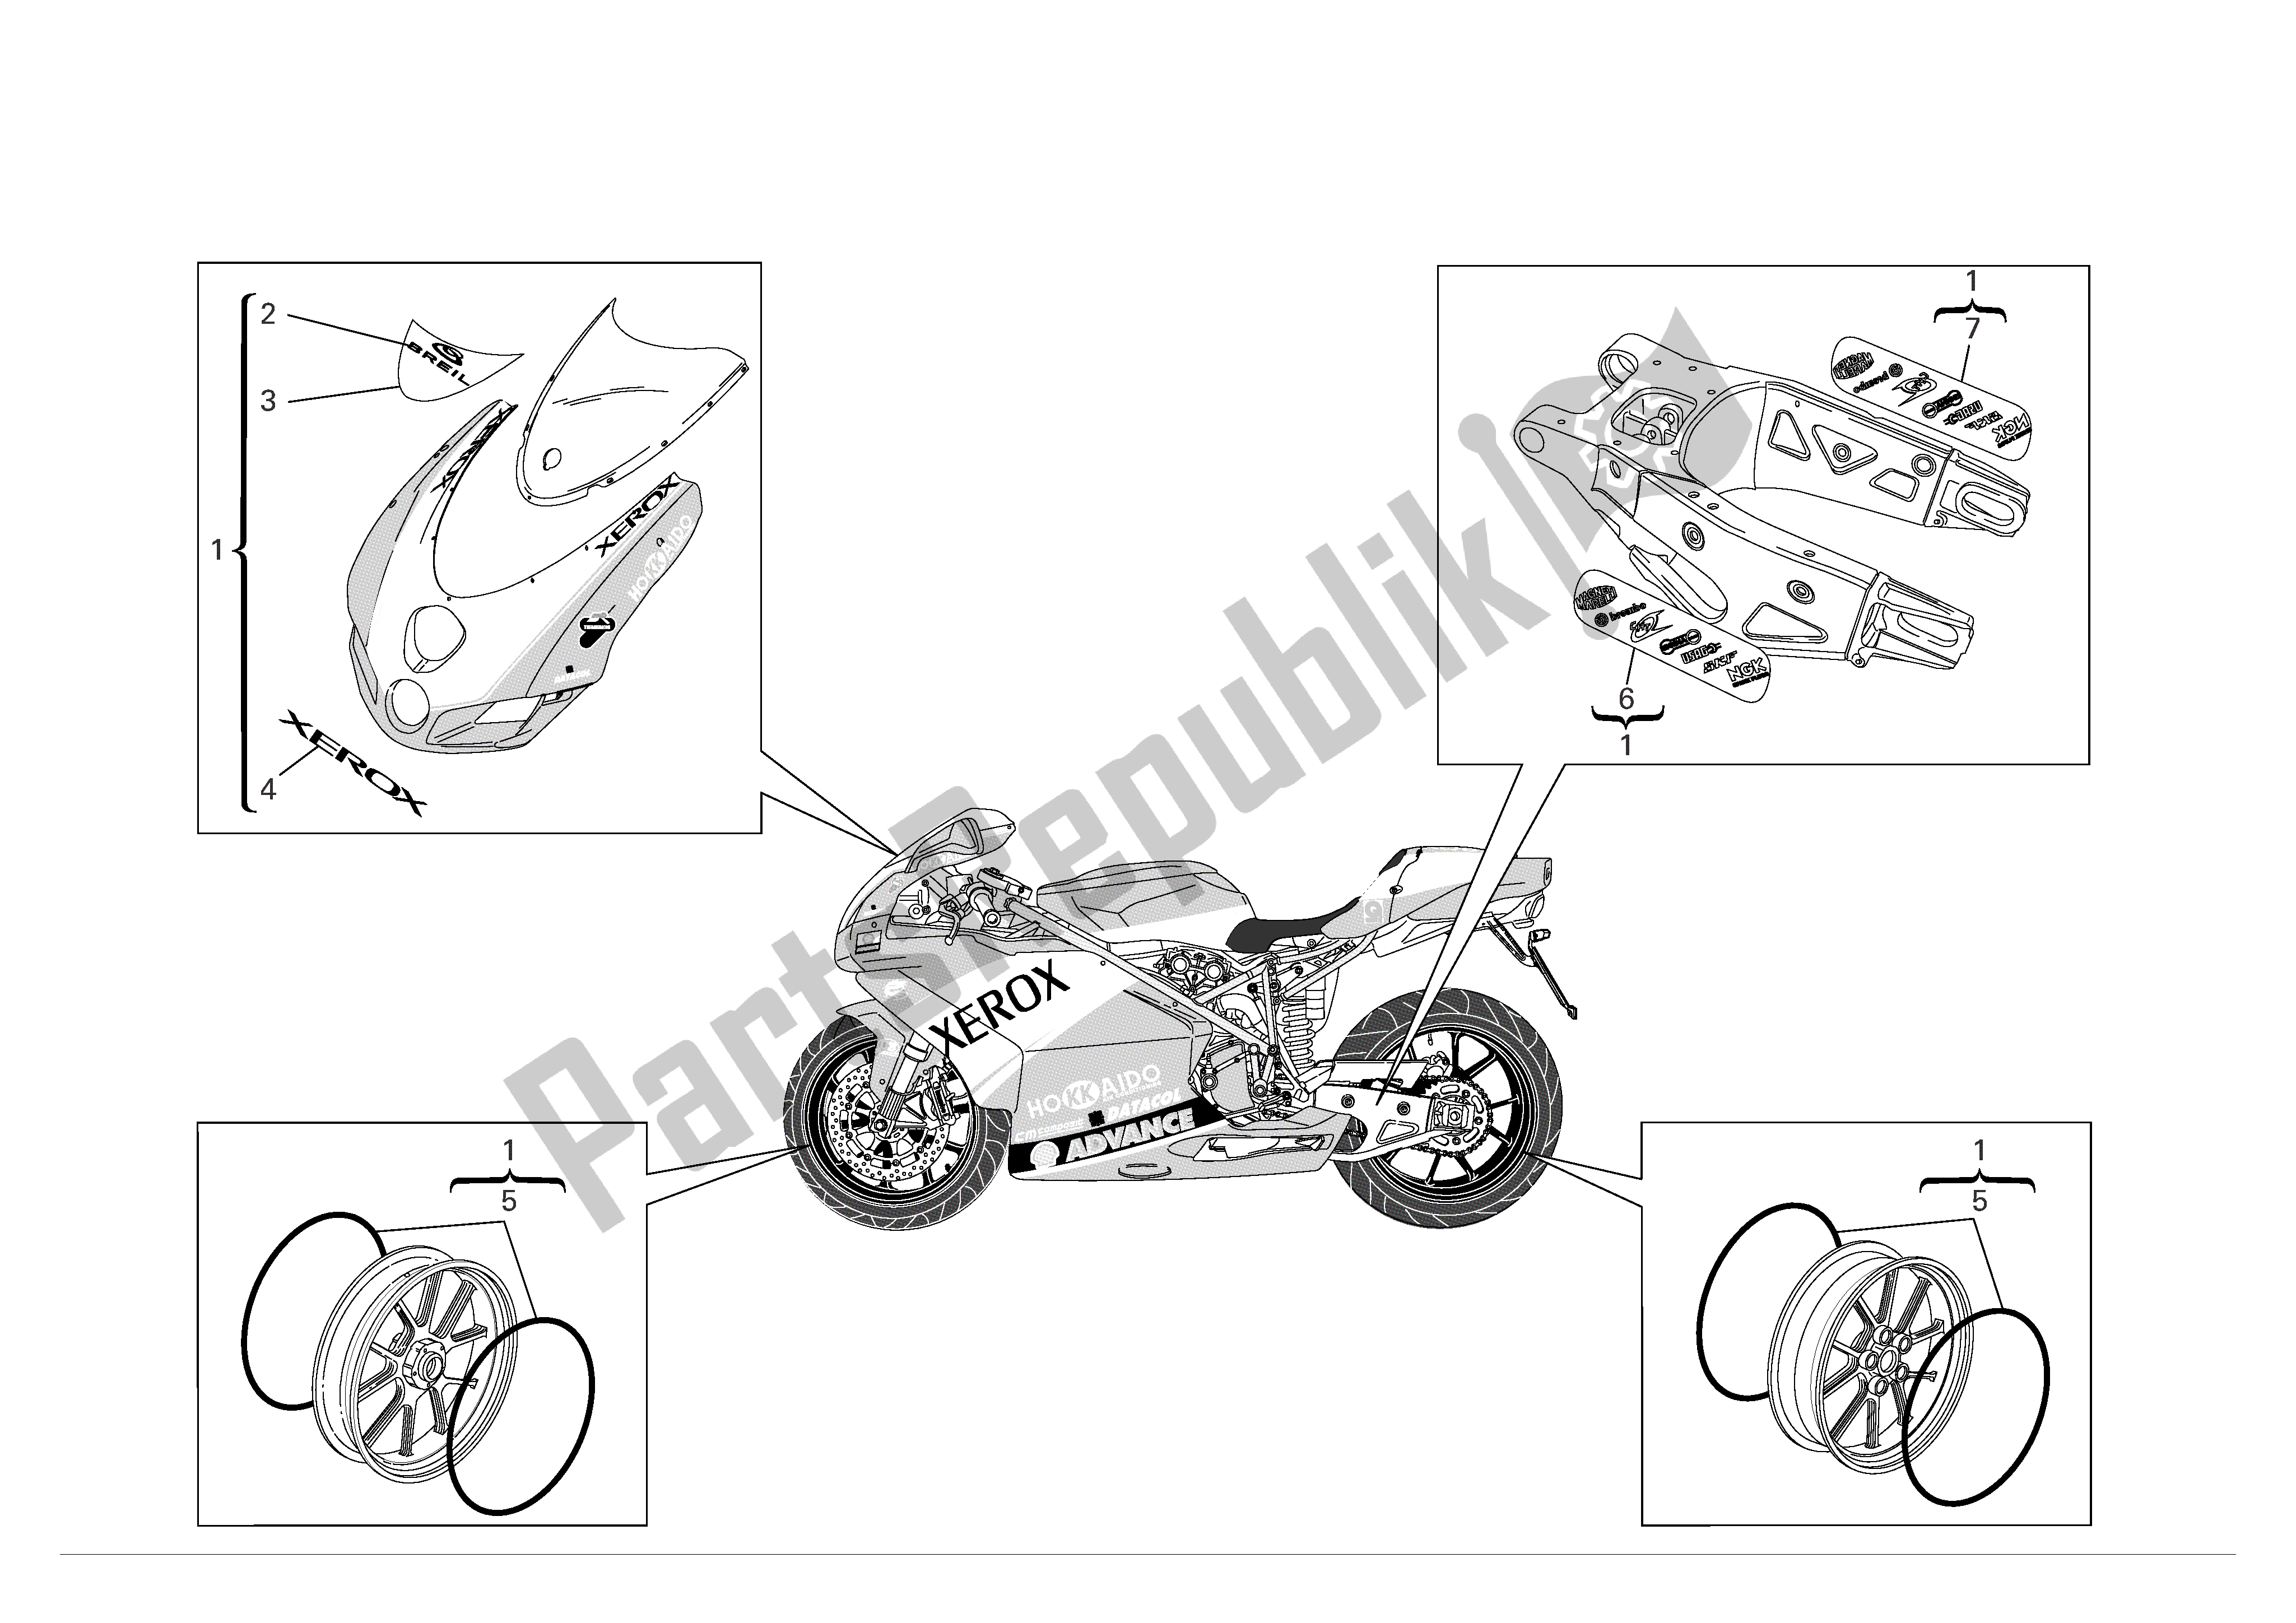 Tutte le parti per il Kit Adesivi del Ducati 999 R Xerox 2006